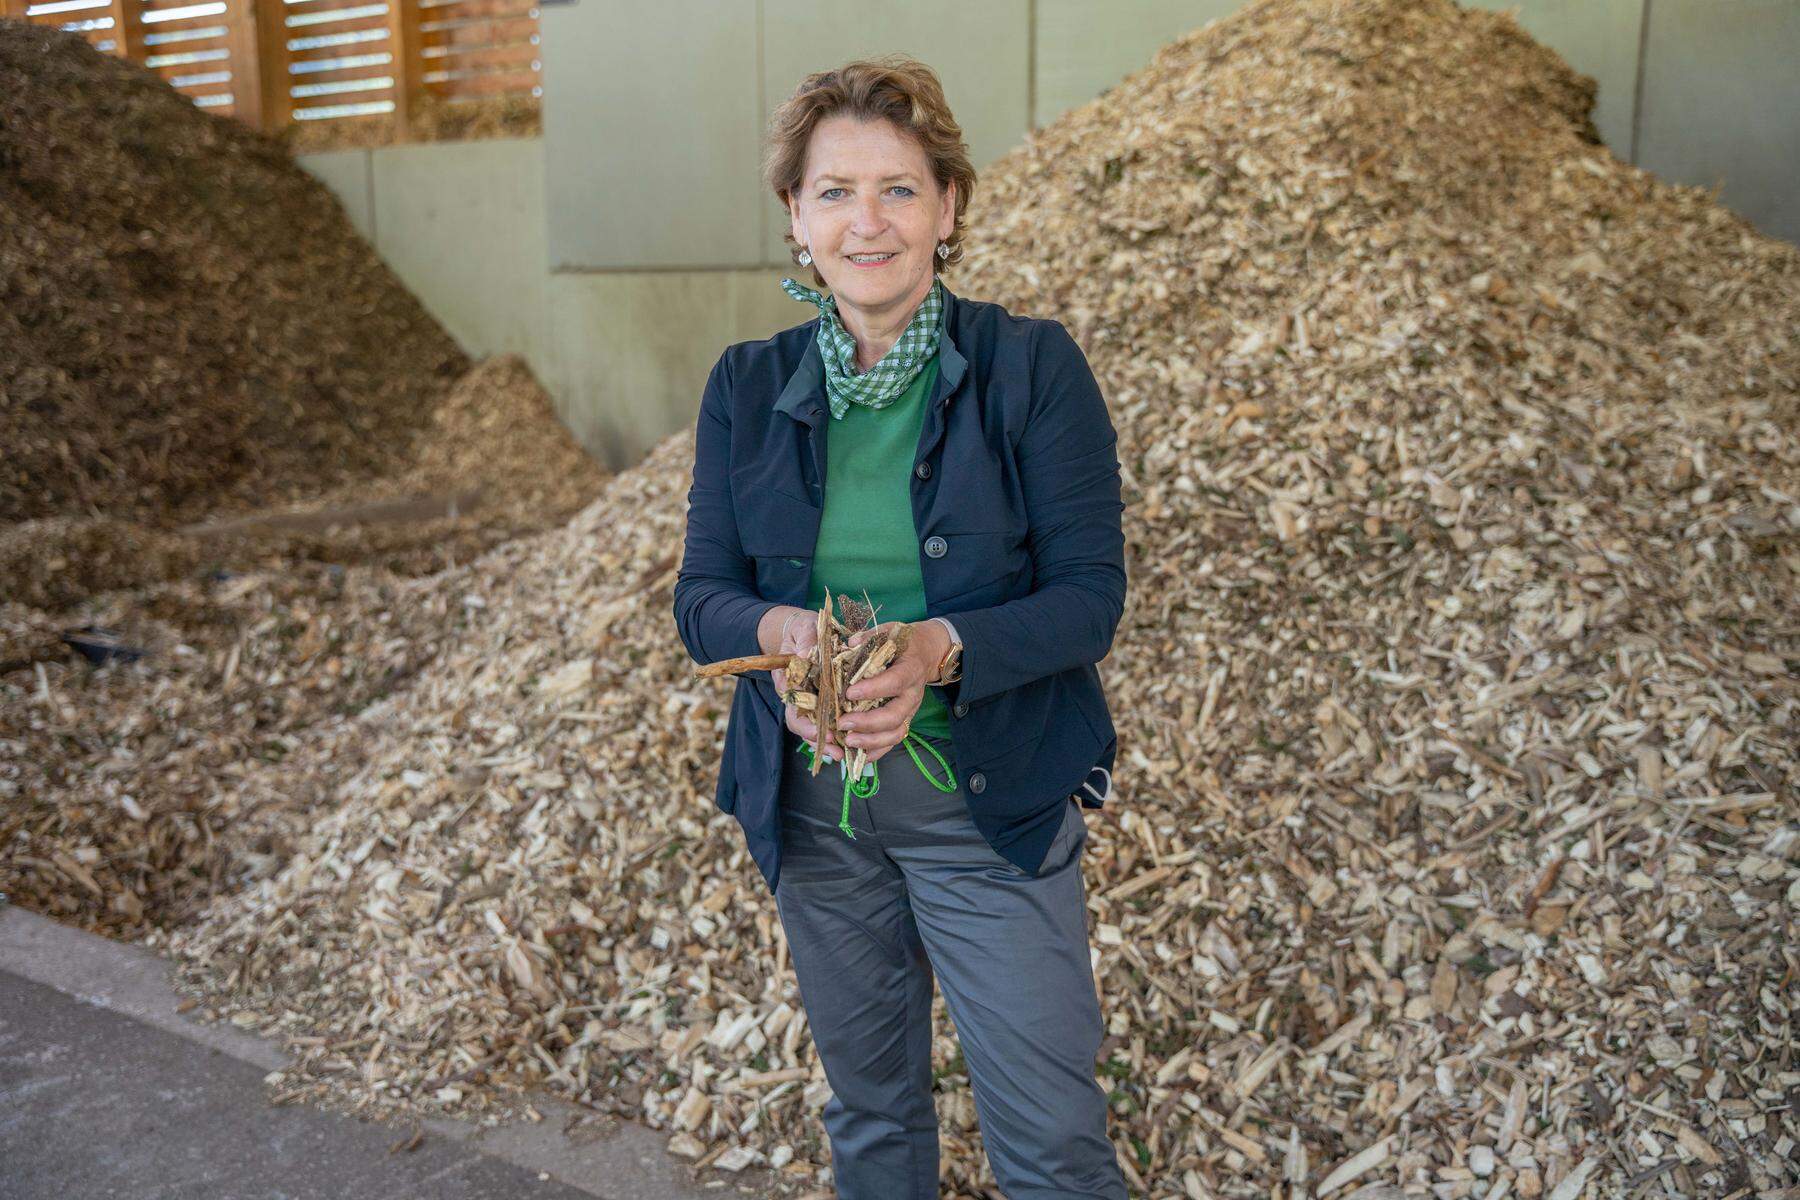 Biomasse Ligist profitiert: Land fördert regionalen Nahwärmeausbau mit zusätzlichen 300.000 Euro